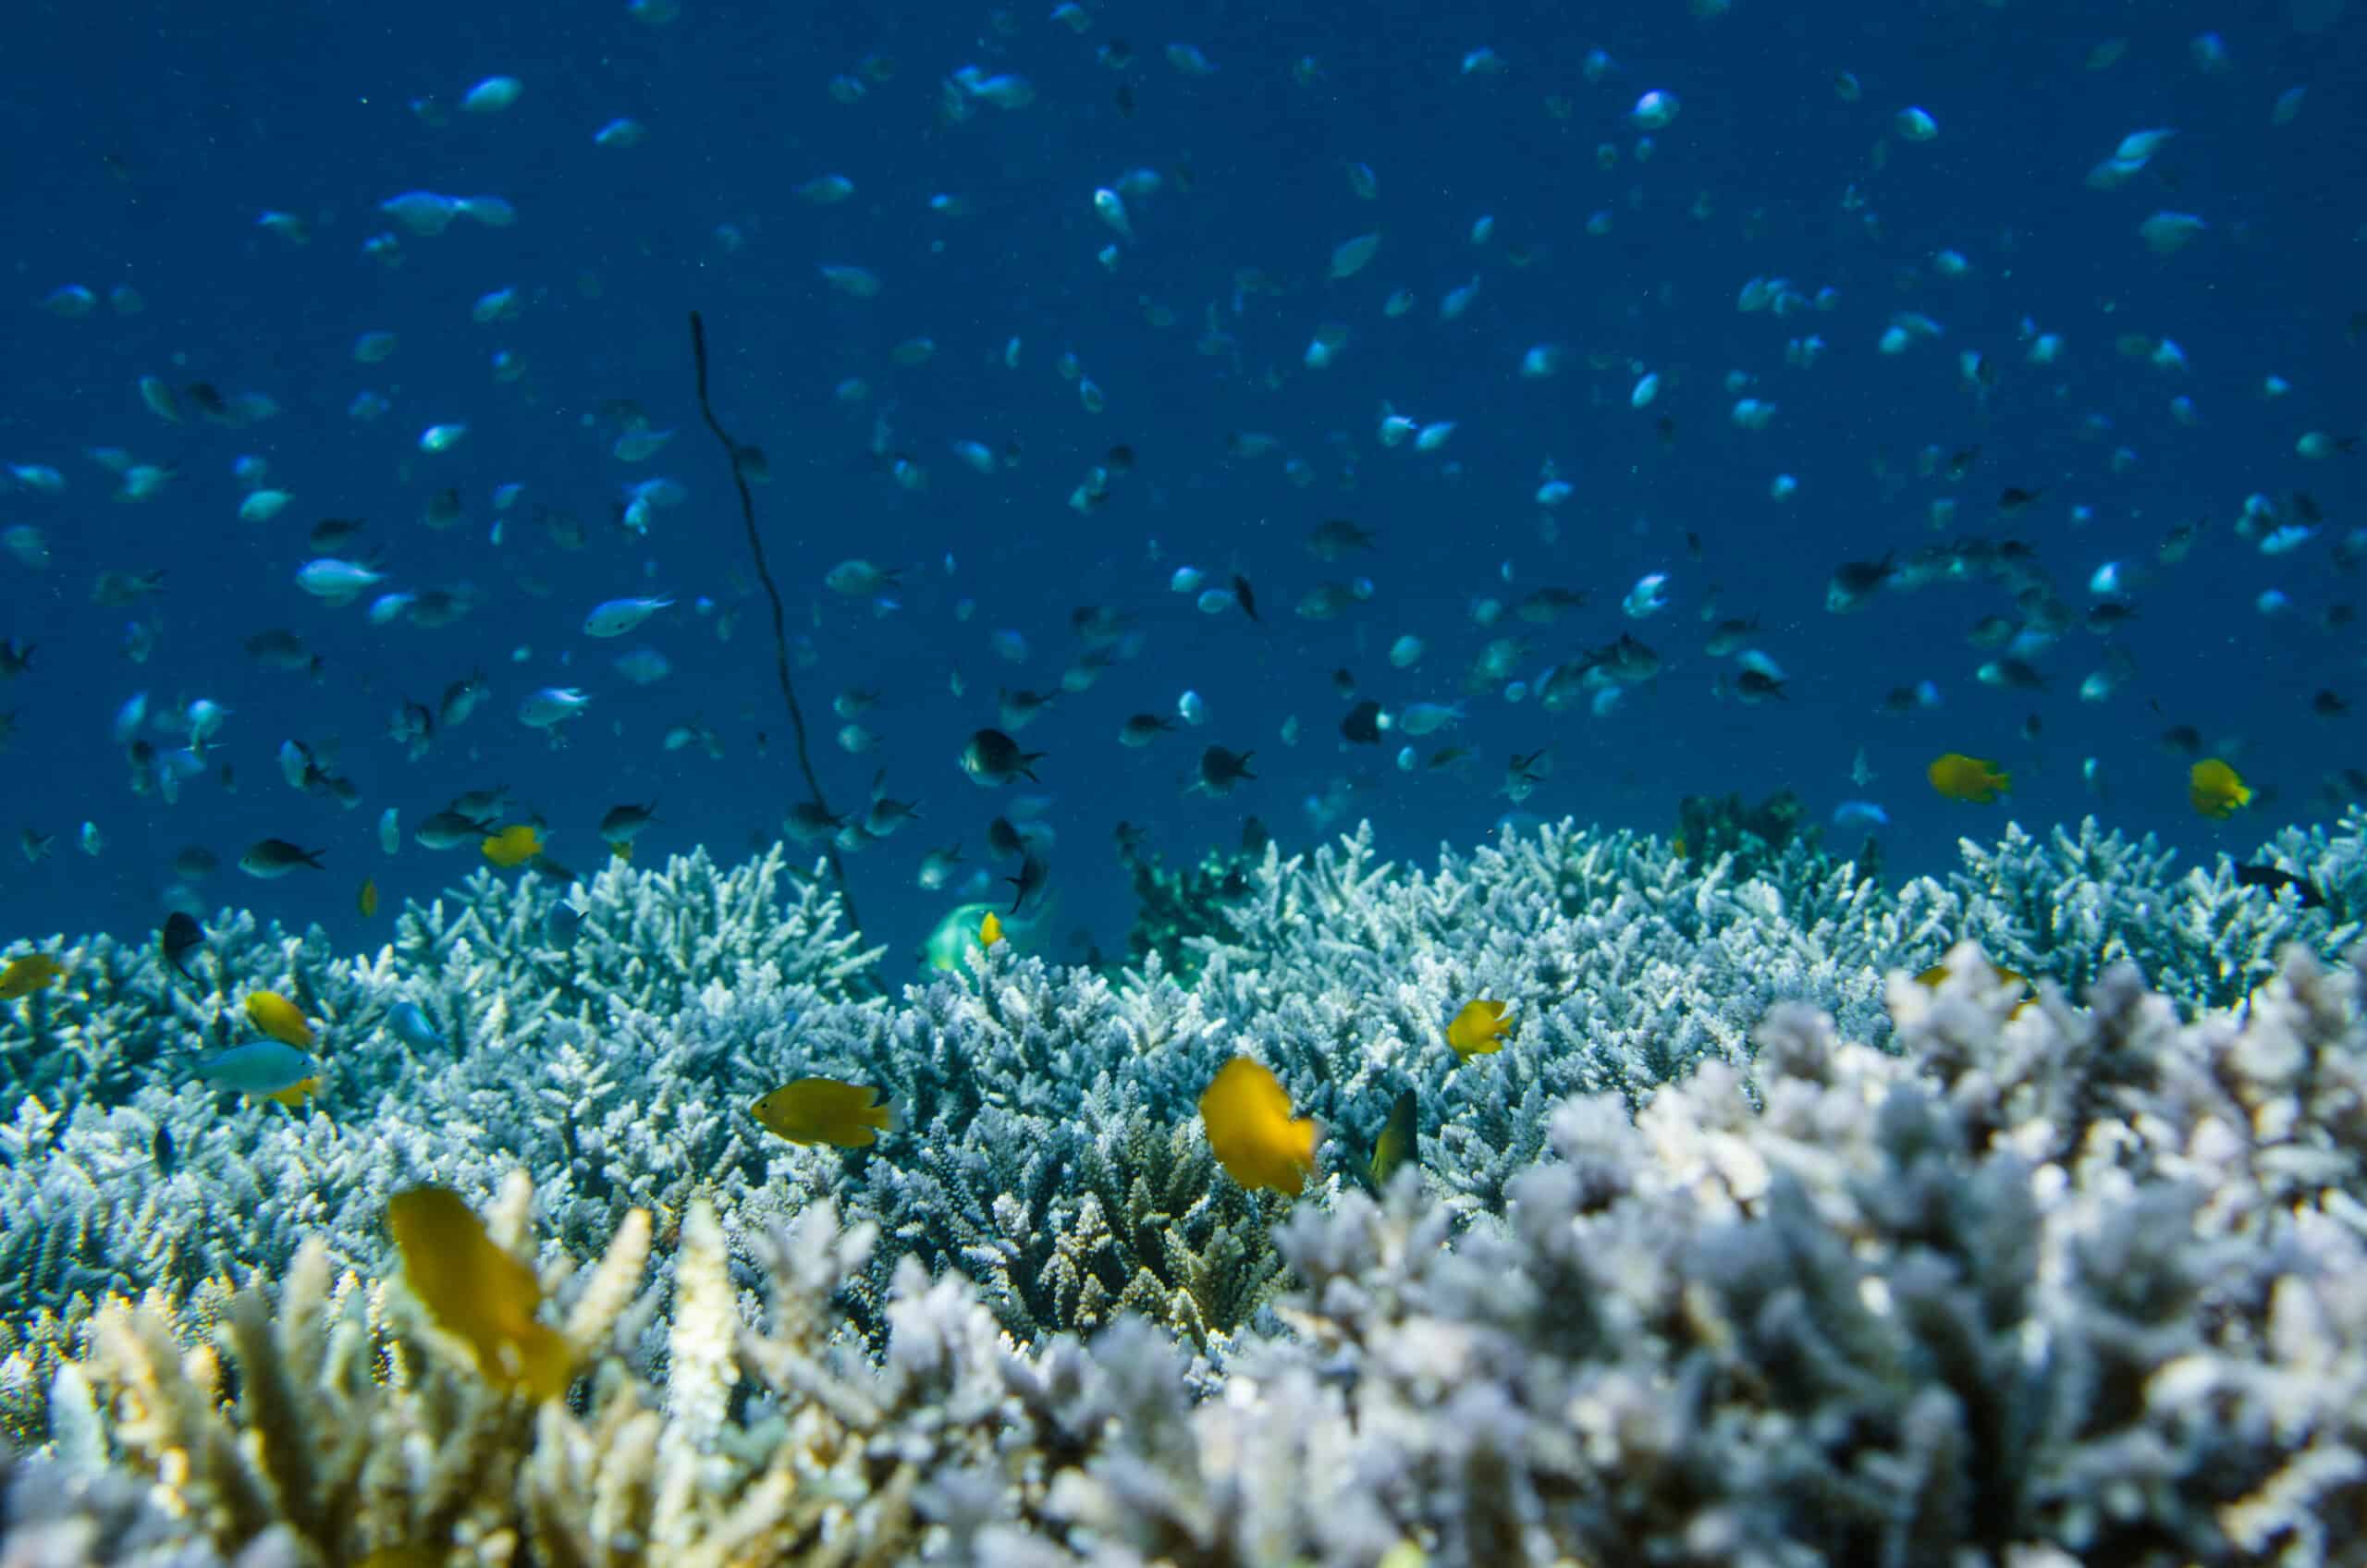 Comment la COP15 de la Convention sur la Biodiversité affecte-t-elle les récifs coralliens ?